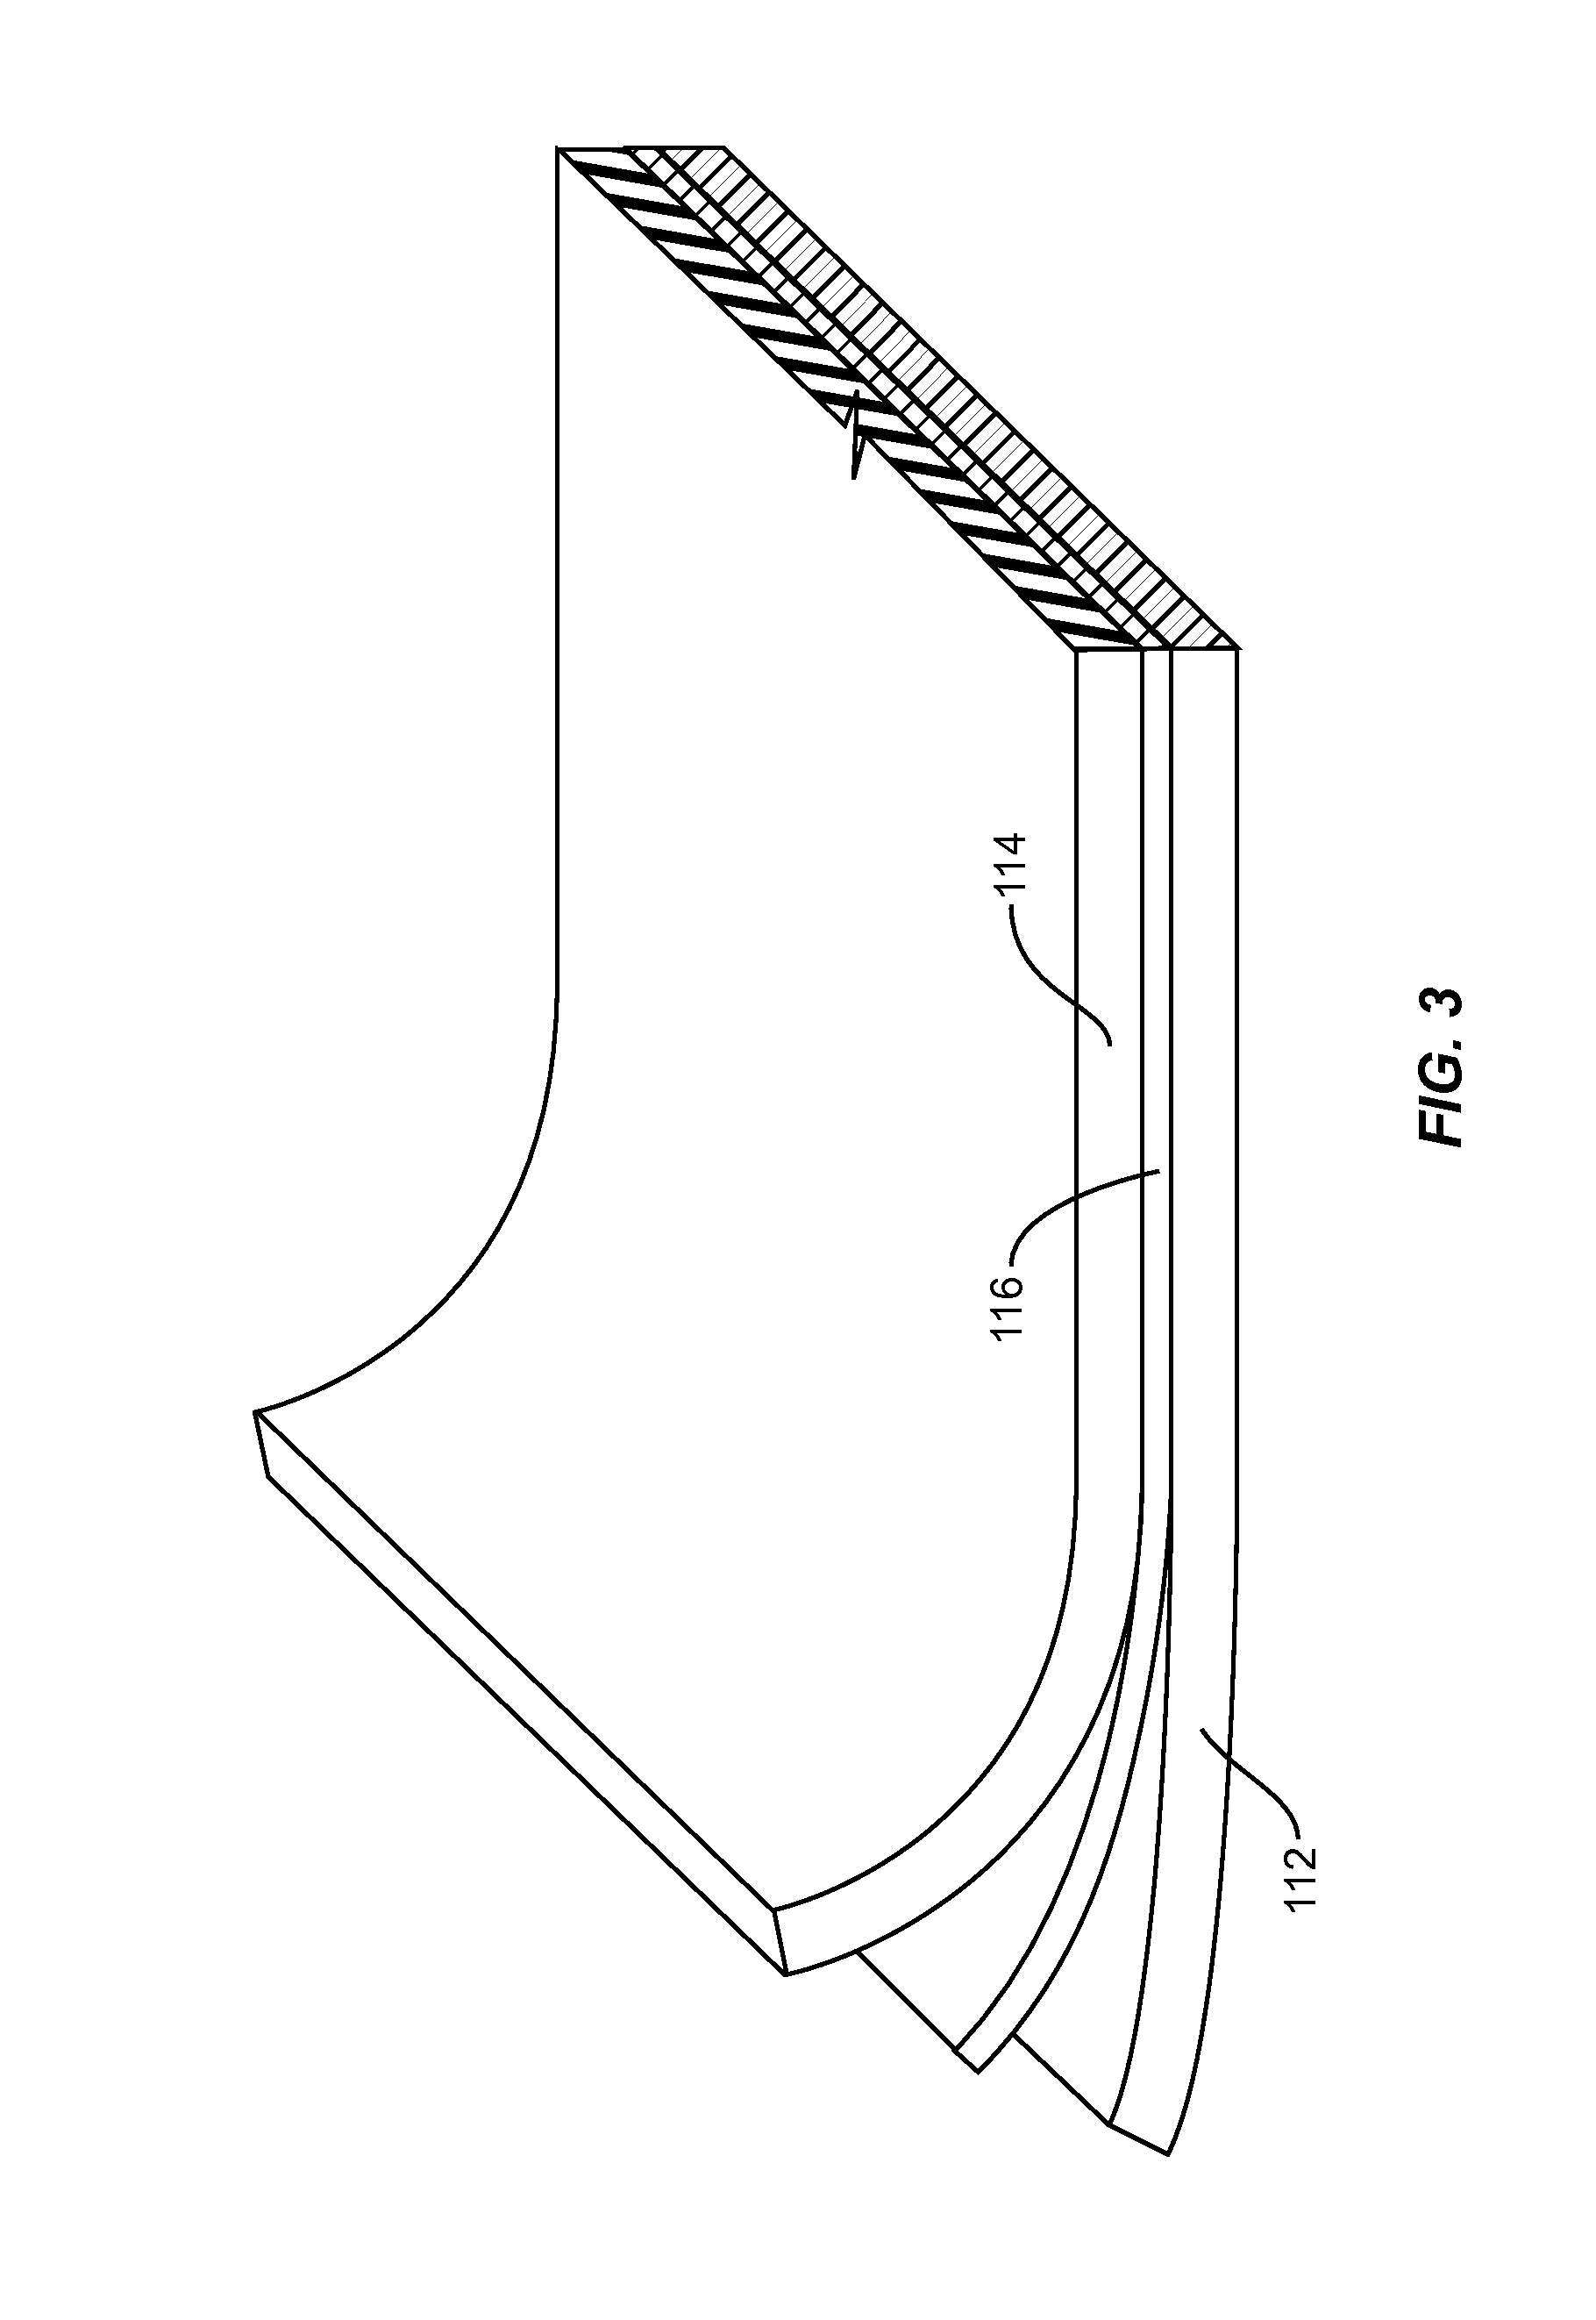 Lightweight reinforced conveyor belt structure